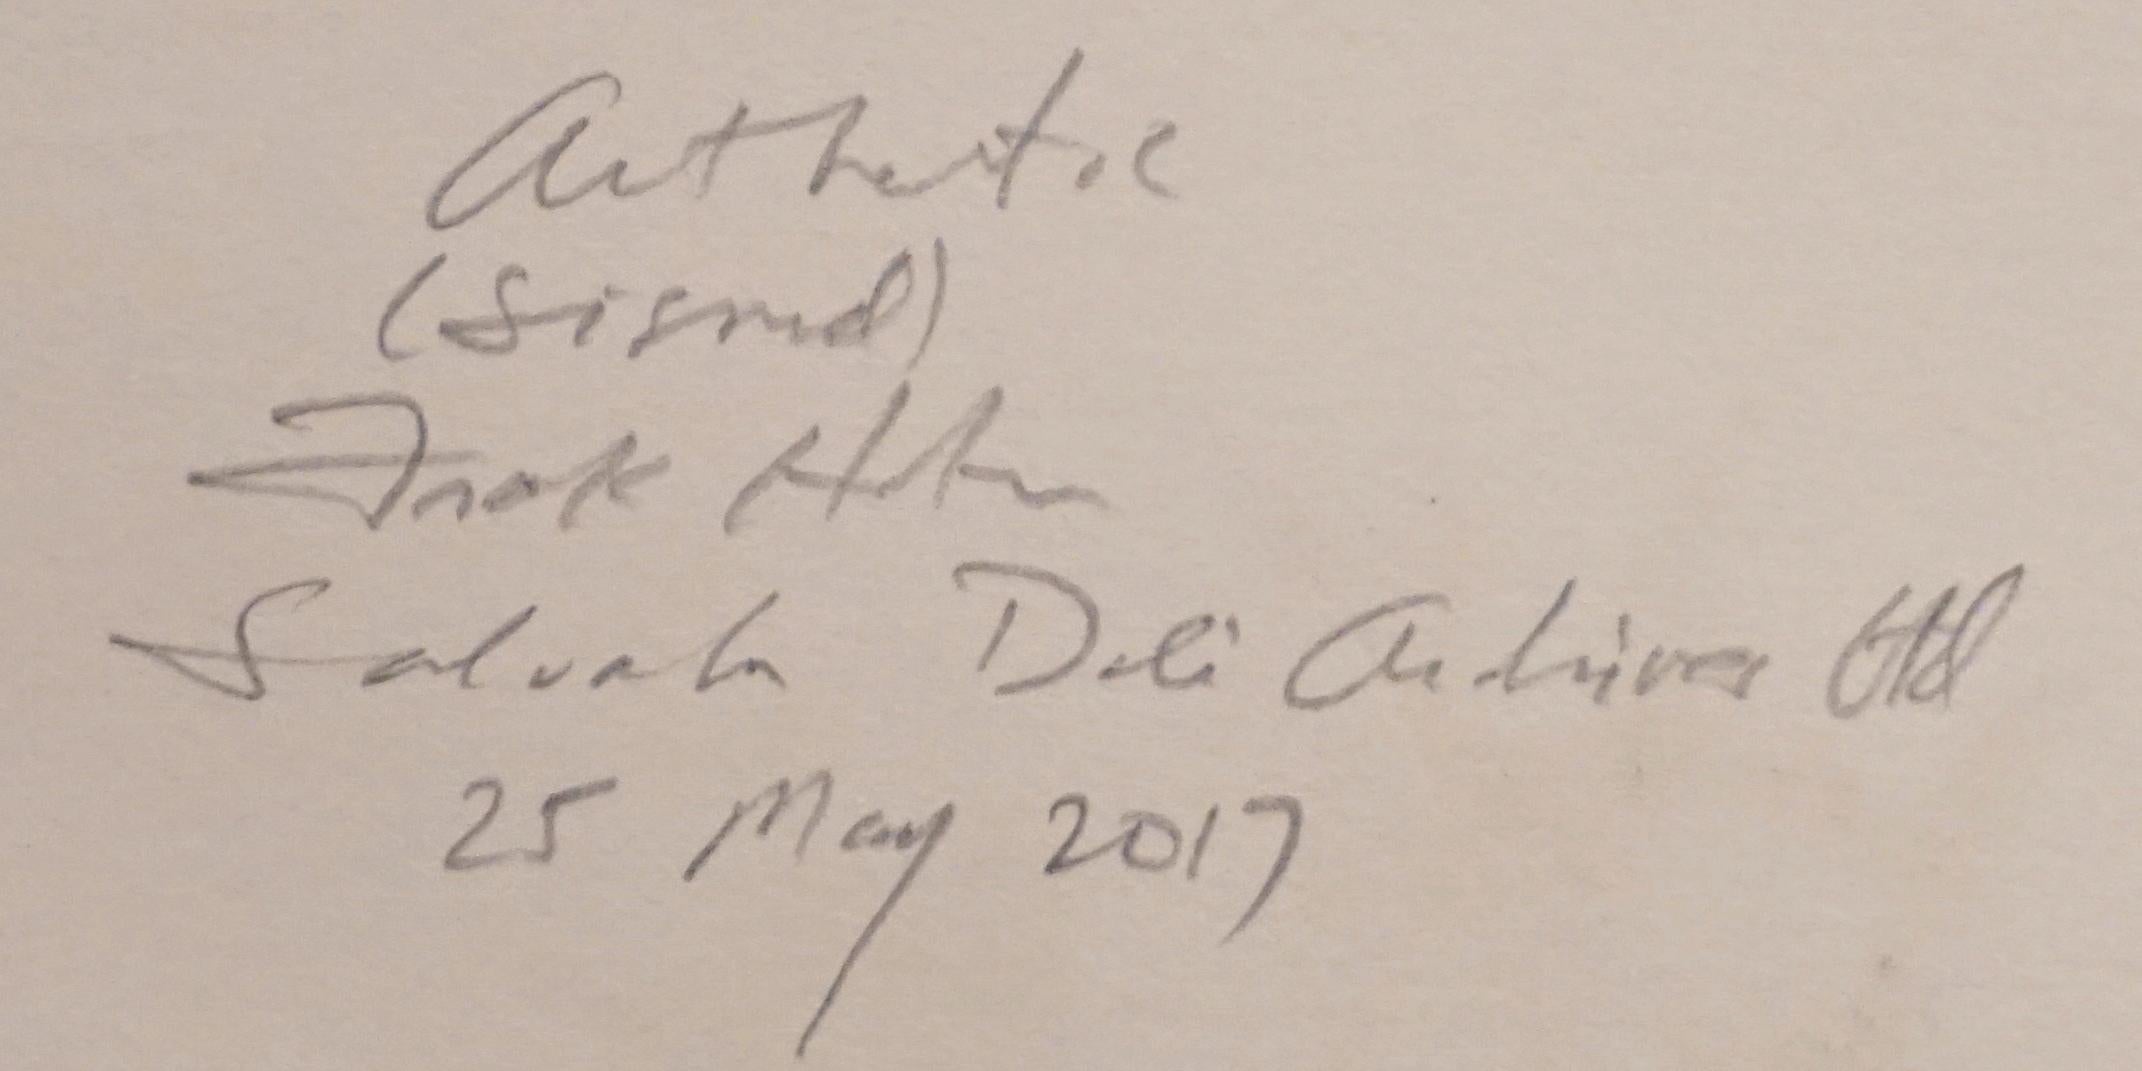 ARTISTA: Salvador Dalí

TÍTULO: Divina Comedia Purgatorio Canto 24

MEDIO: xilografía

FIRMADO: Firmado a mano 

NÚMERO DE EDICIÓN: 139/150

MEDIDAS: 9